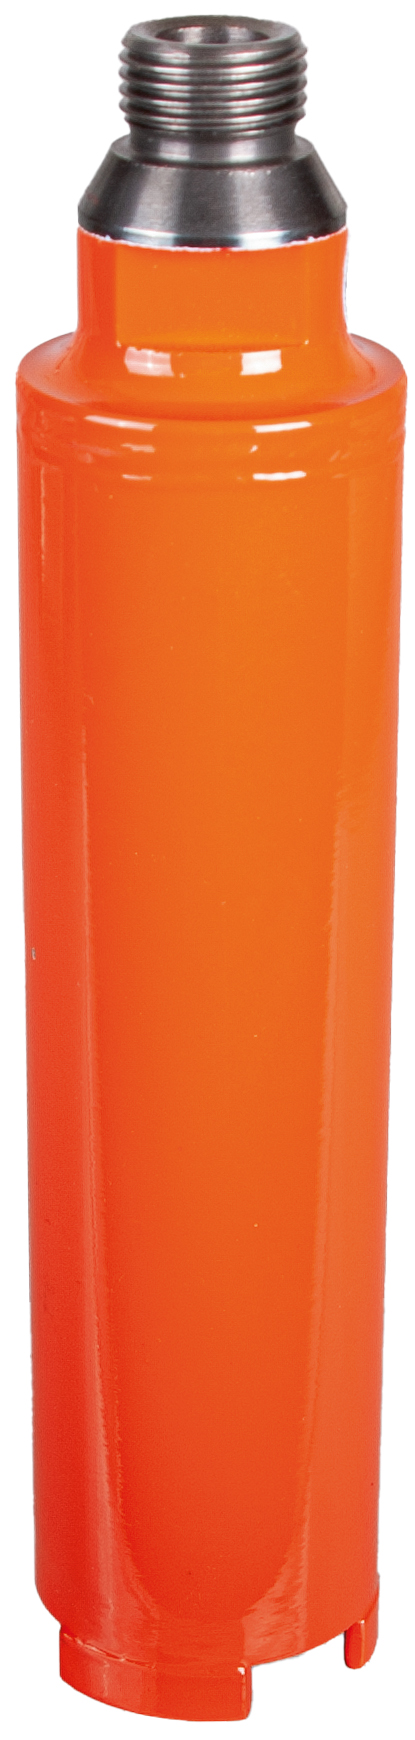 DIAREX Hohlbohrer Helix Orange ø 50 mm | Bohrtiefe 150 mm